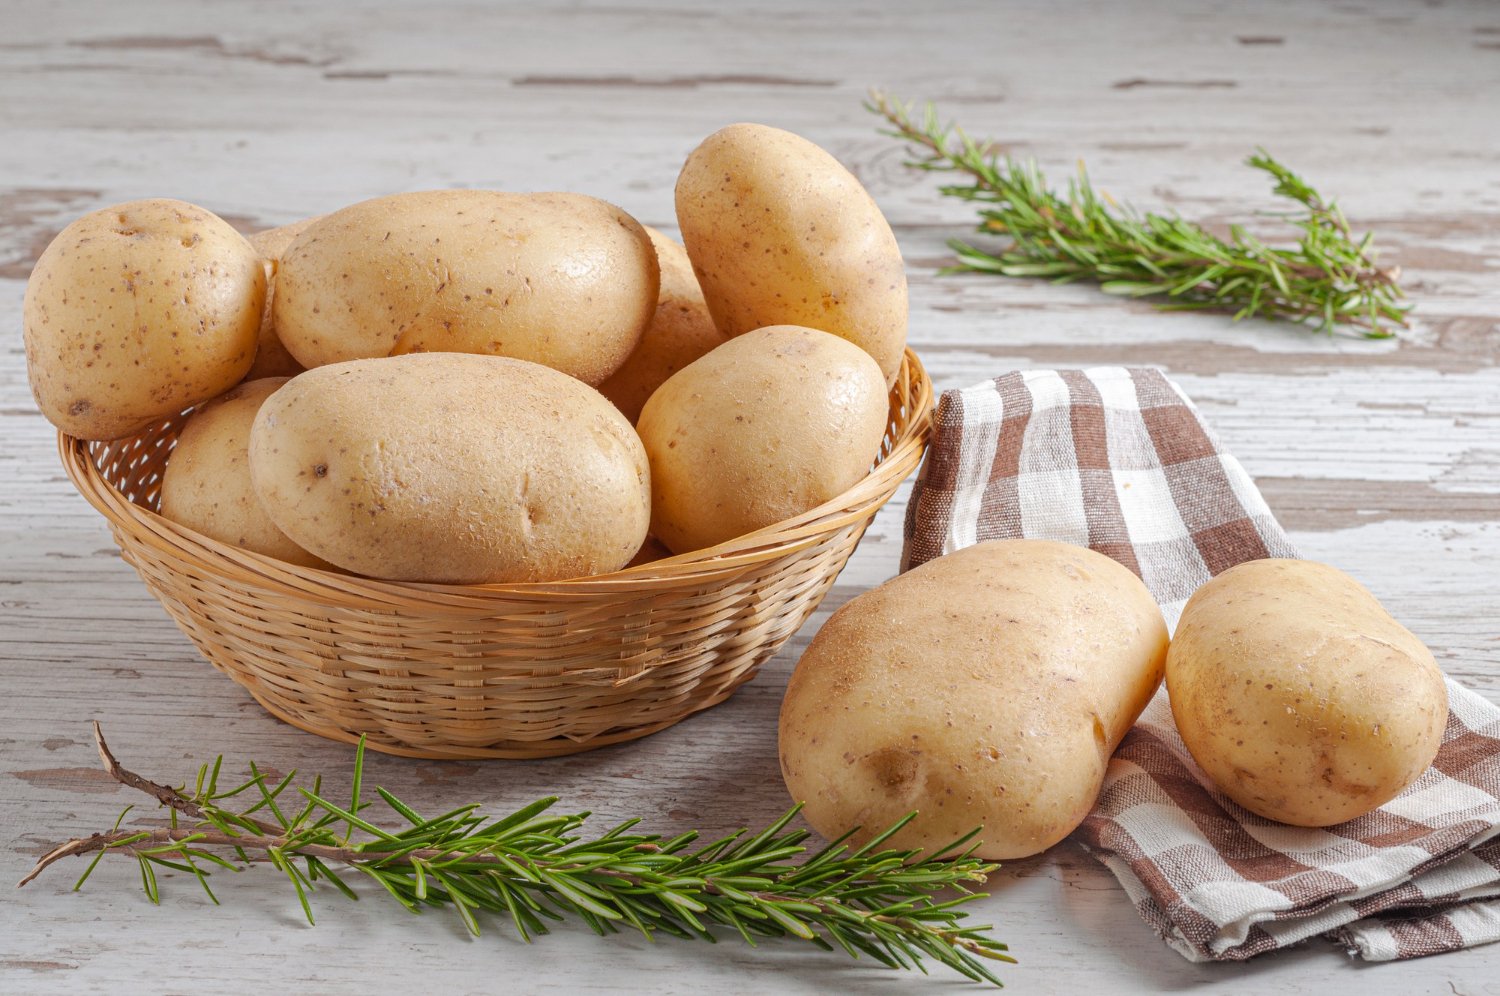 Sáu món ăn đơn giản từ khoai tây tốt cho sức khỏe, giúp giảm cân, bổ tỳ dưỡng vị